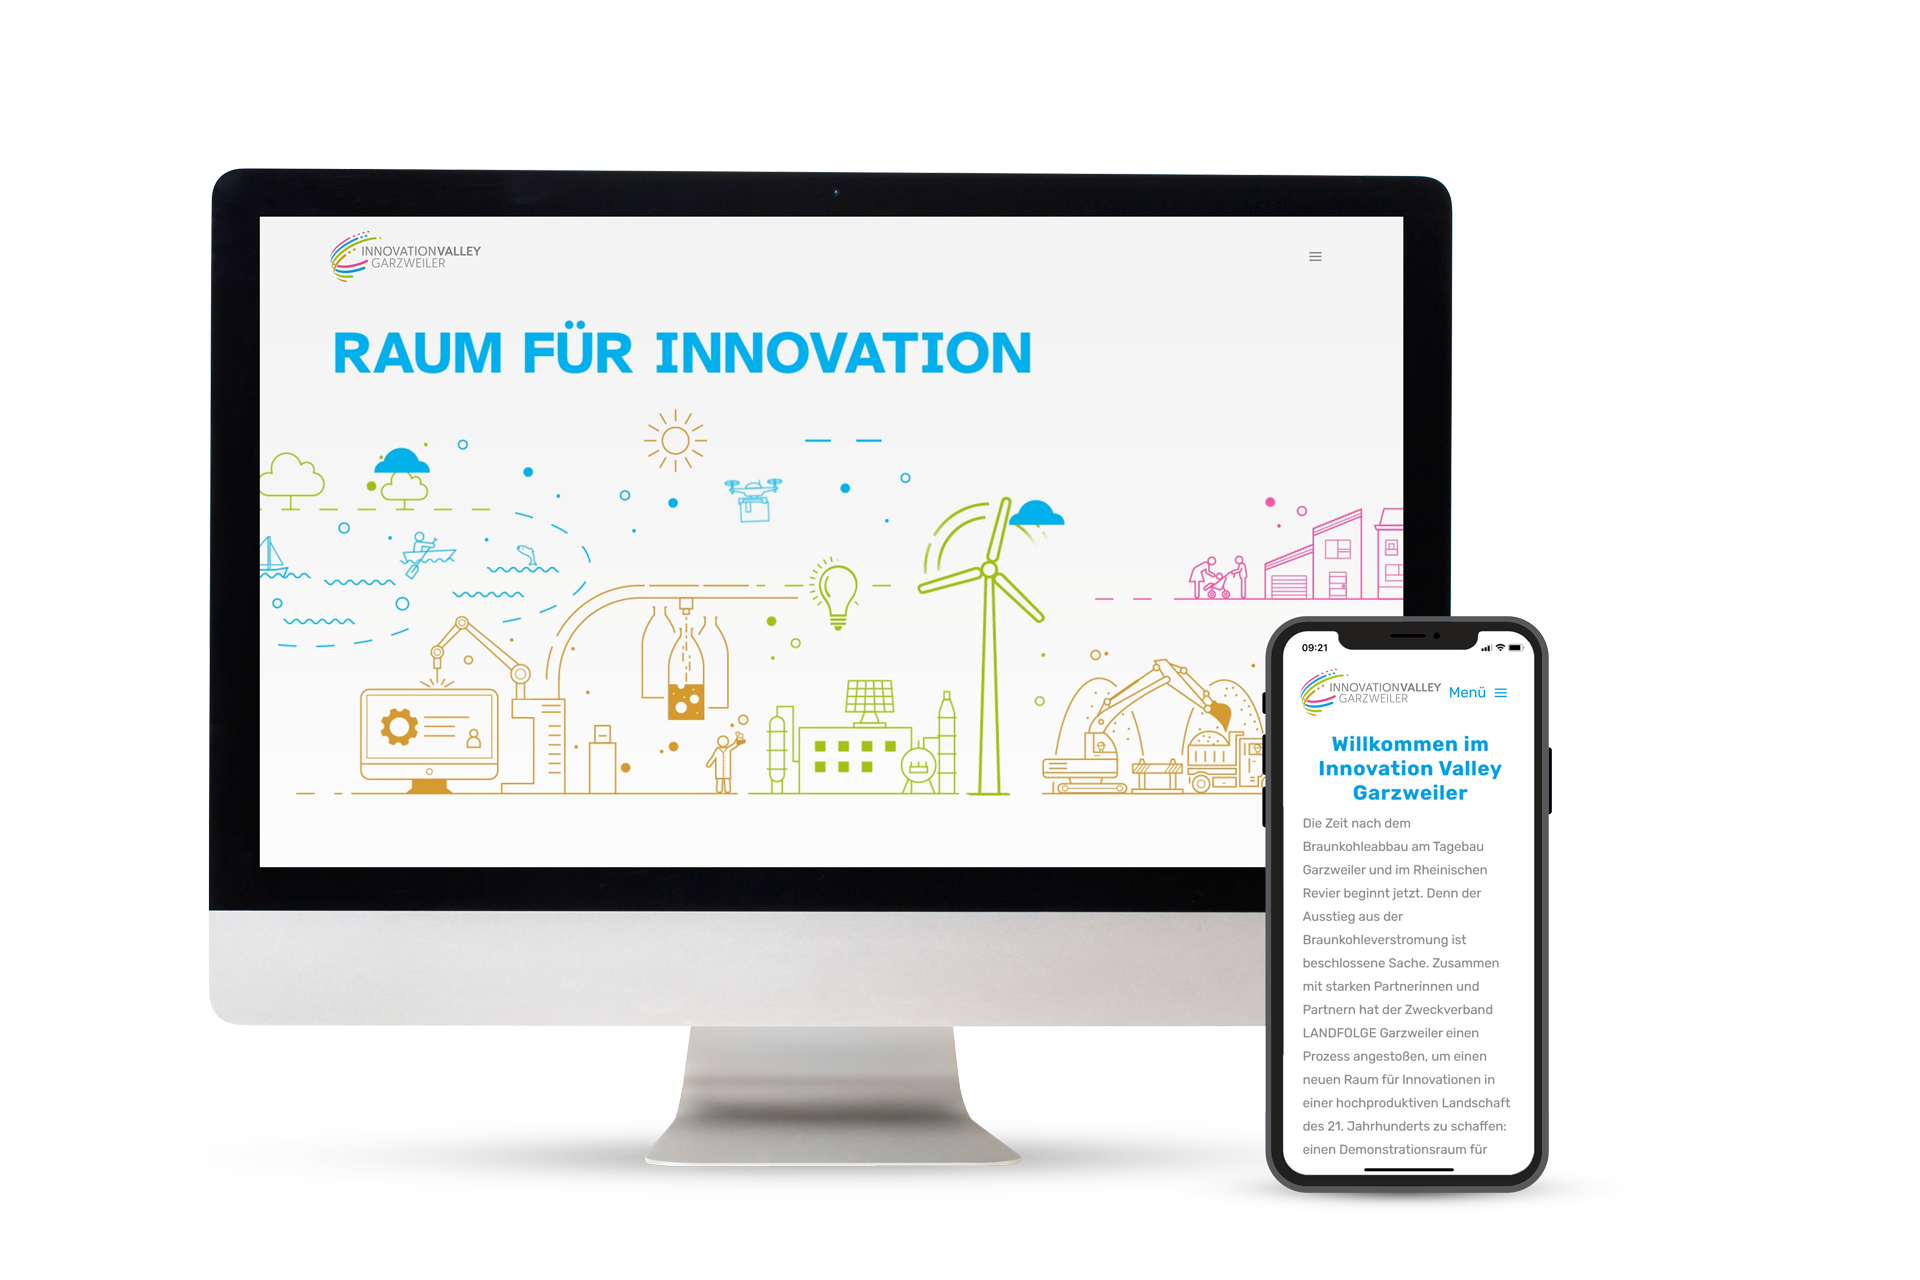 Innovation Valley Garzweiler mit neuer Website